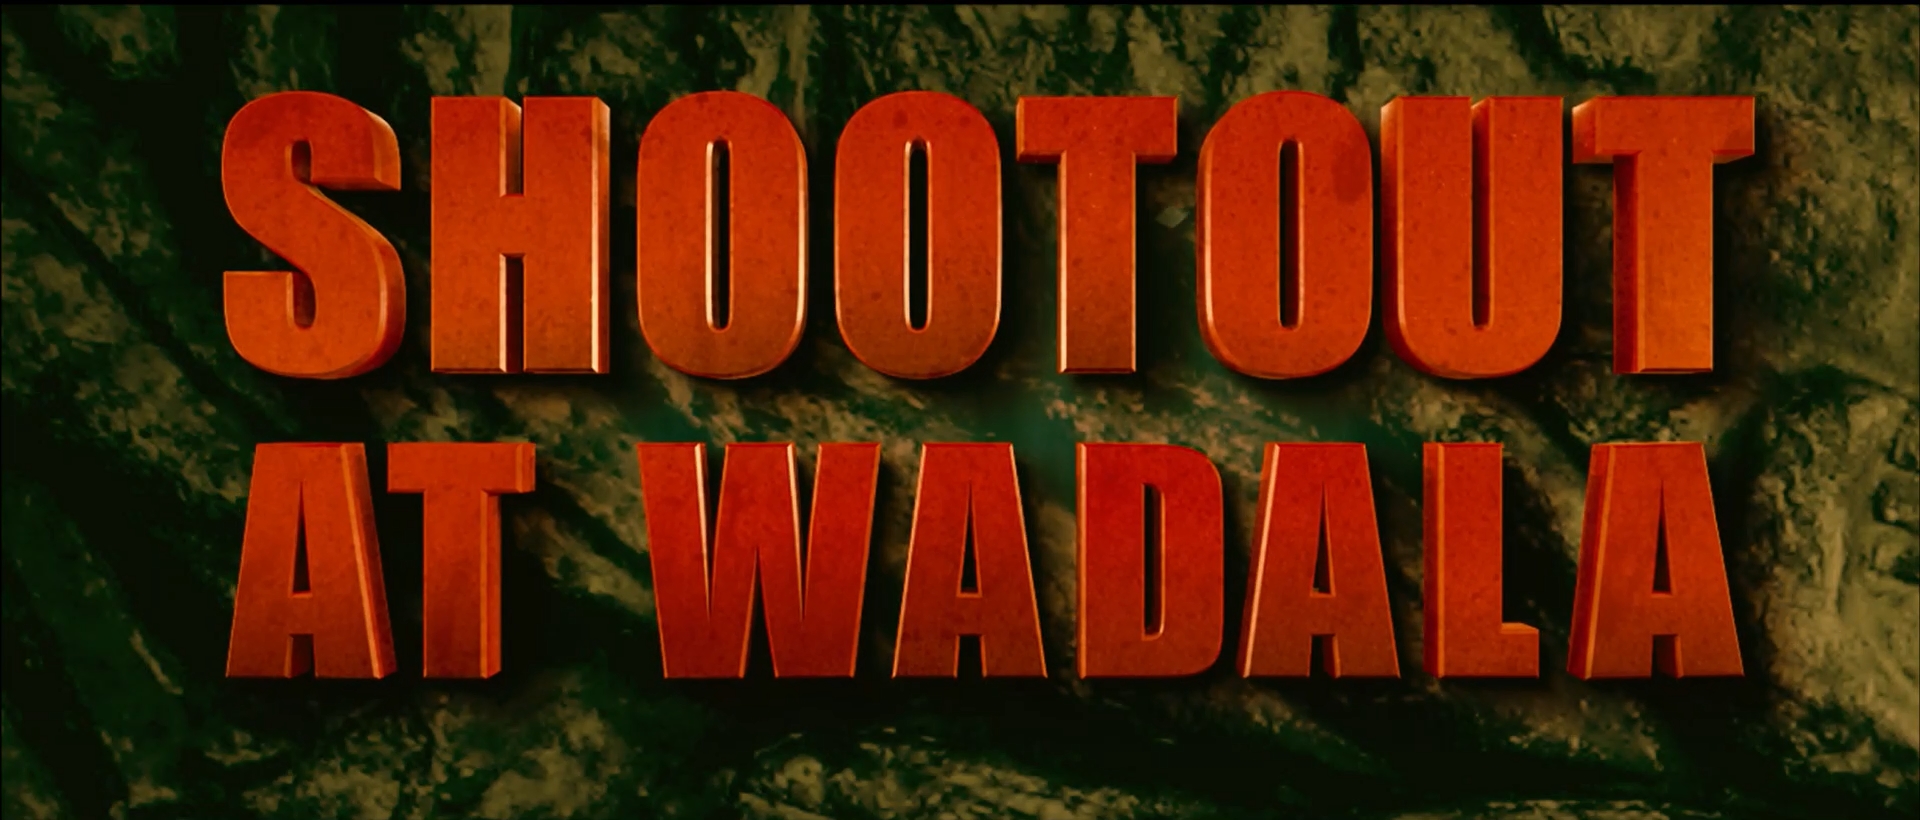 Shootout At Wadala movie kickass torrent